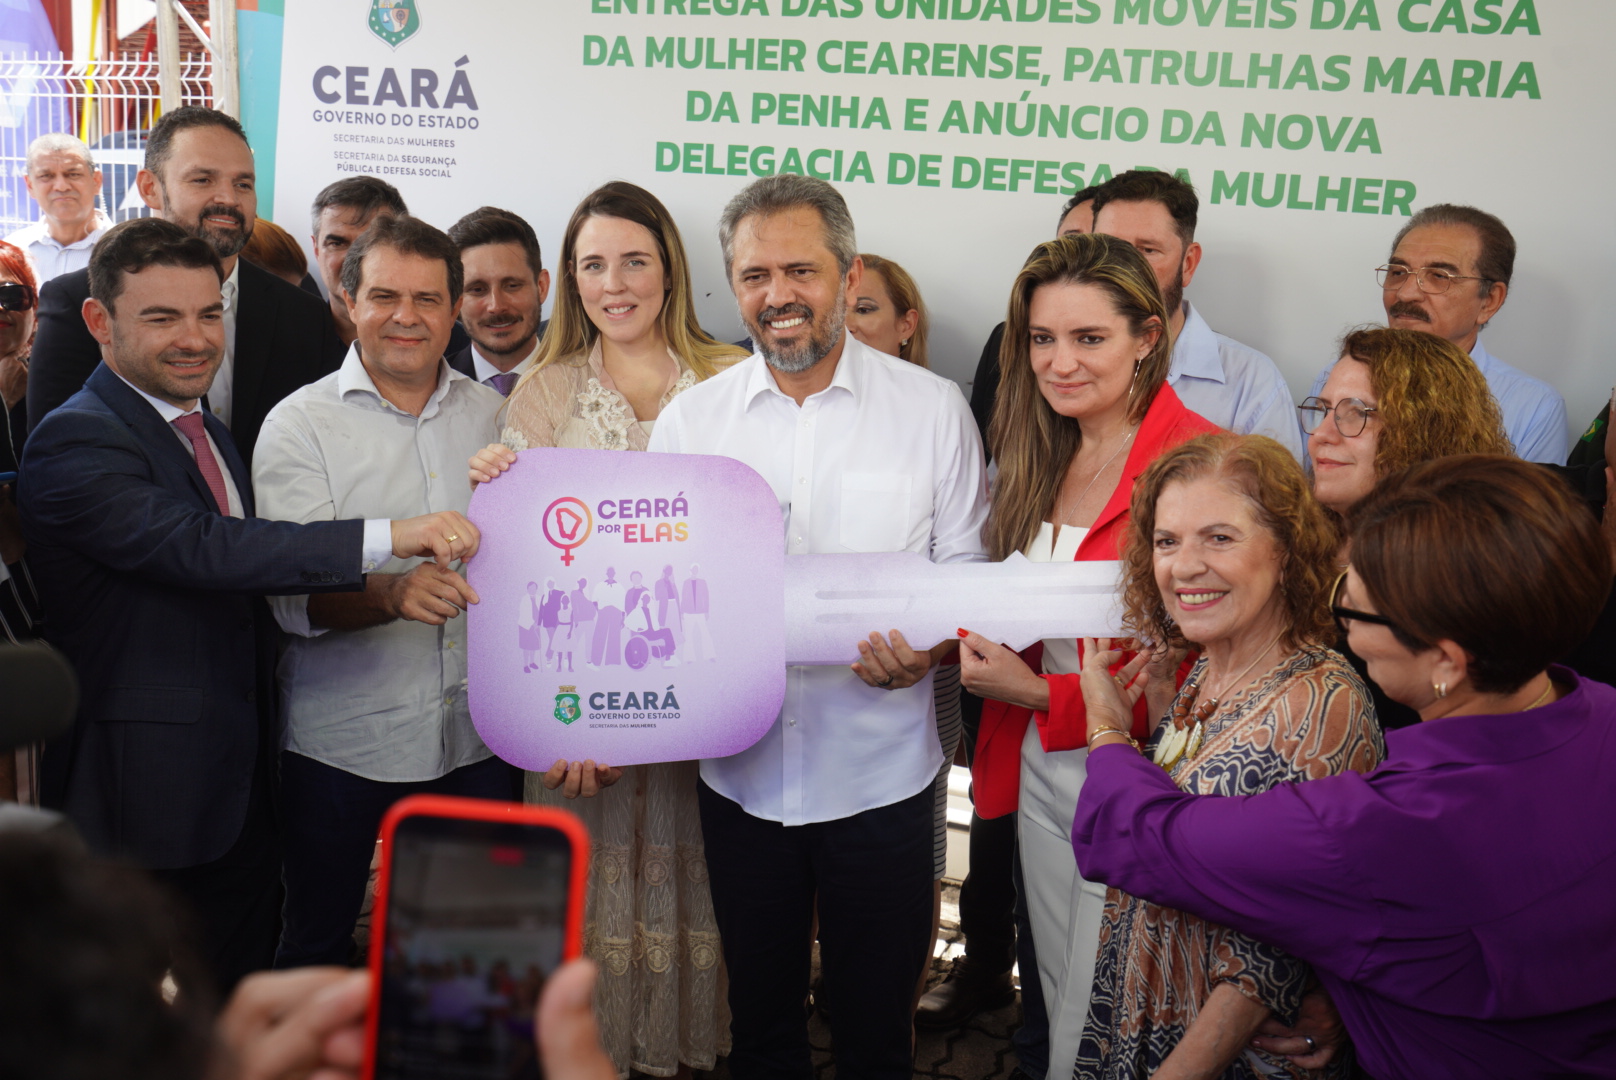 Ceará vai contar com nova Delegacia de Defesa da Mulher e reforço de veículos para fortalecer proteção às mulheres